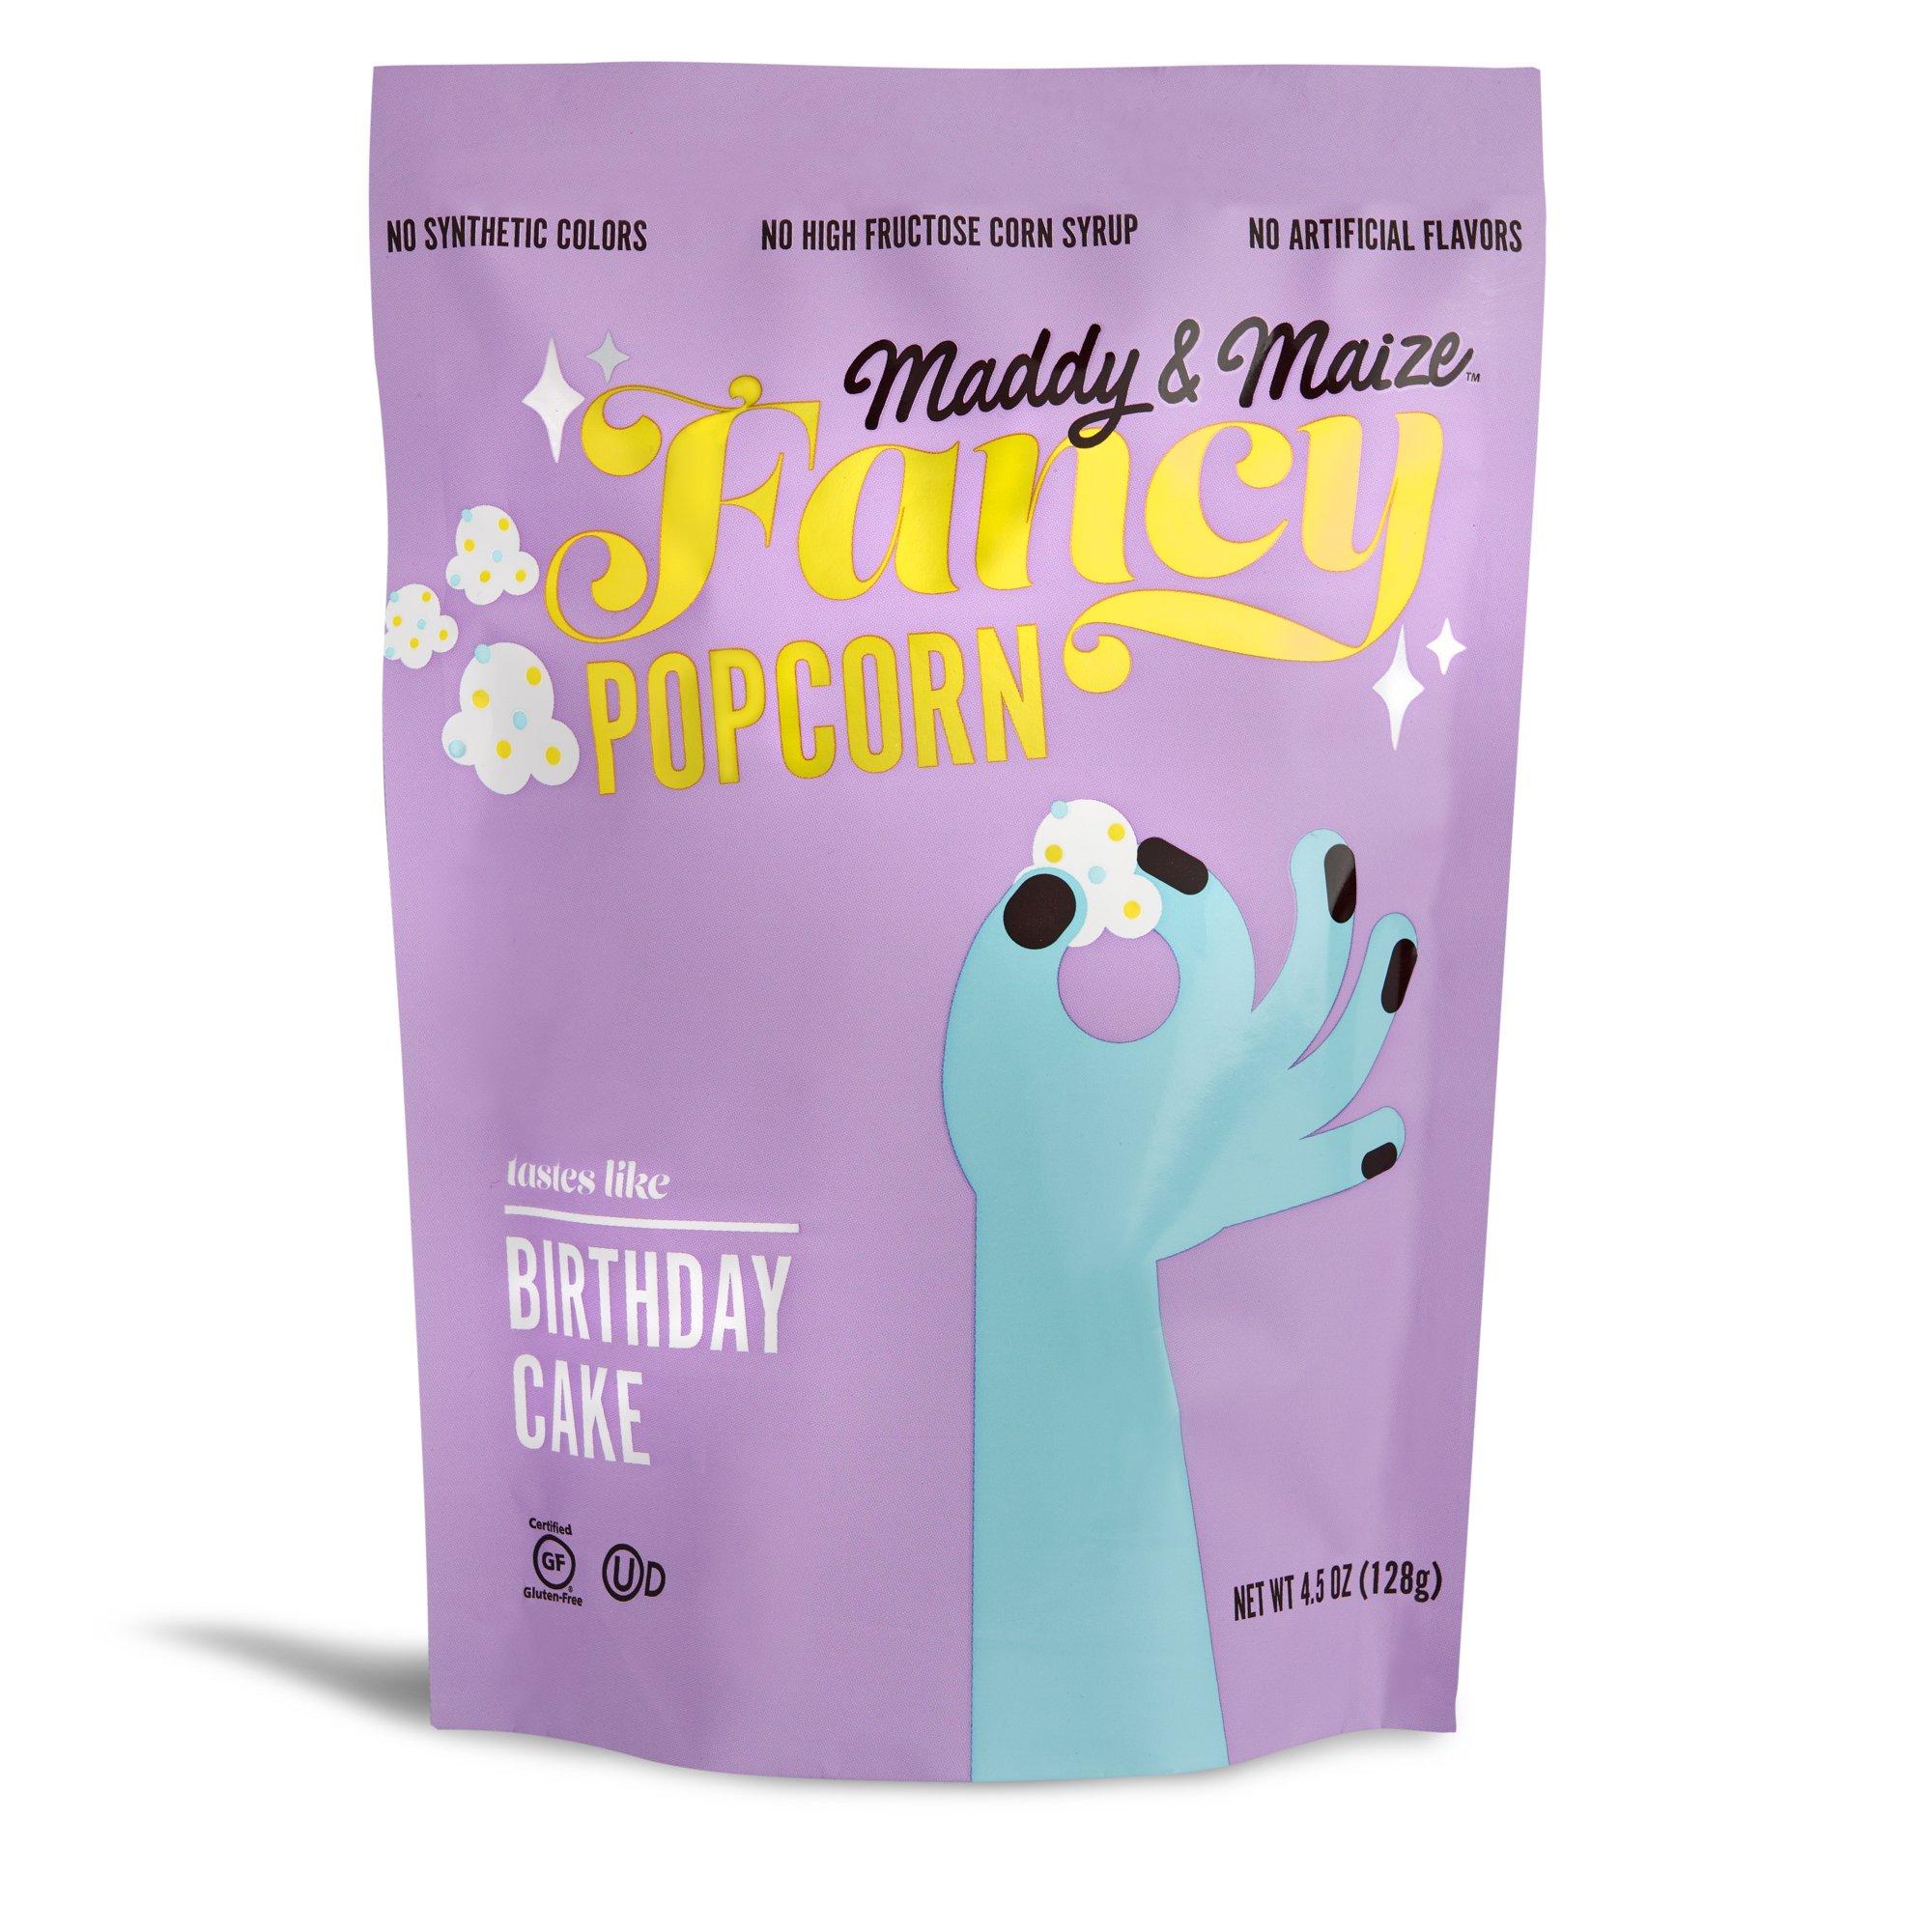 Maddy & Maize Fancy Popcorn in Birthday Cake, $5.99 @maddyandmaize.com